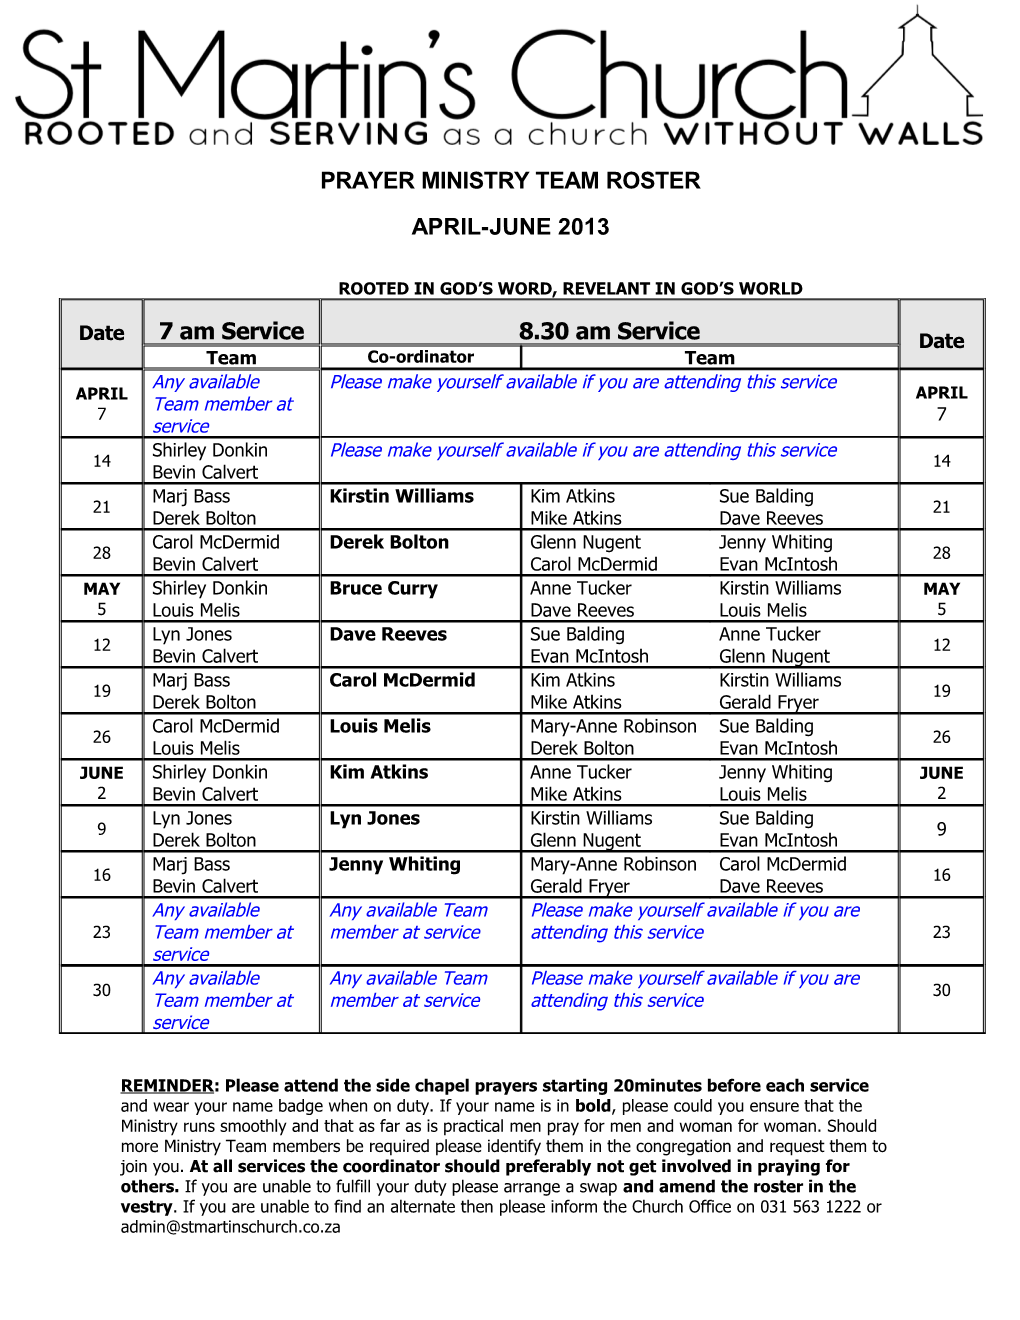 Prayer Ministry Team Roster